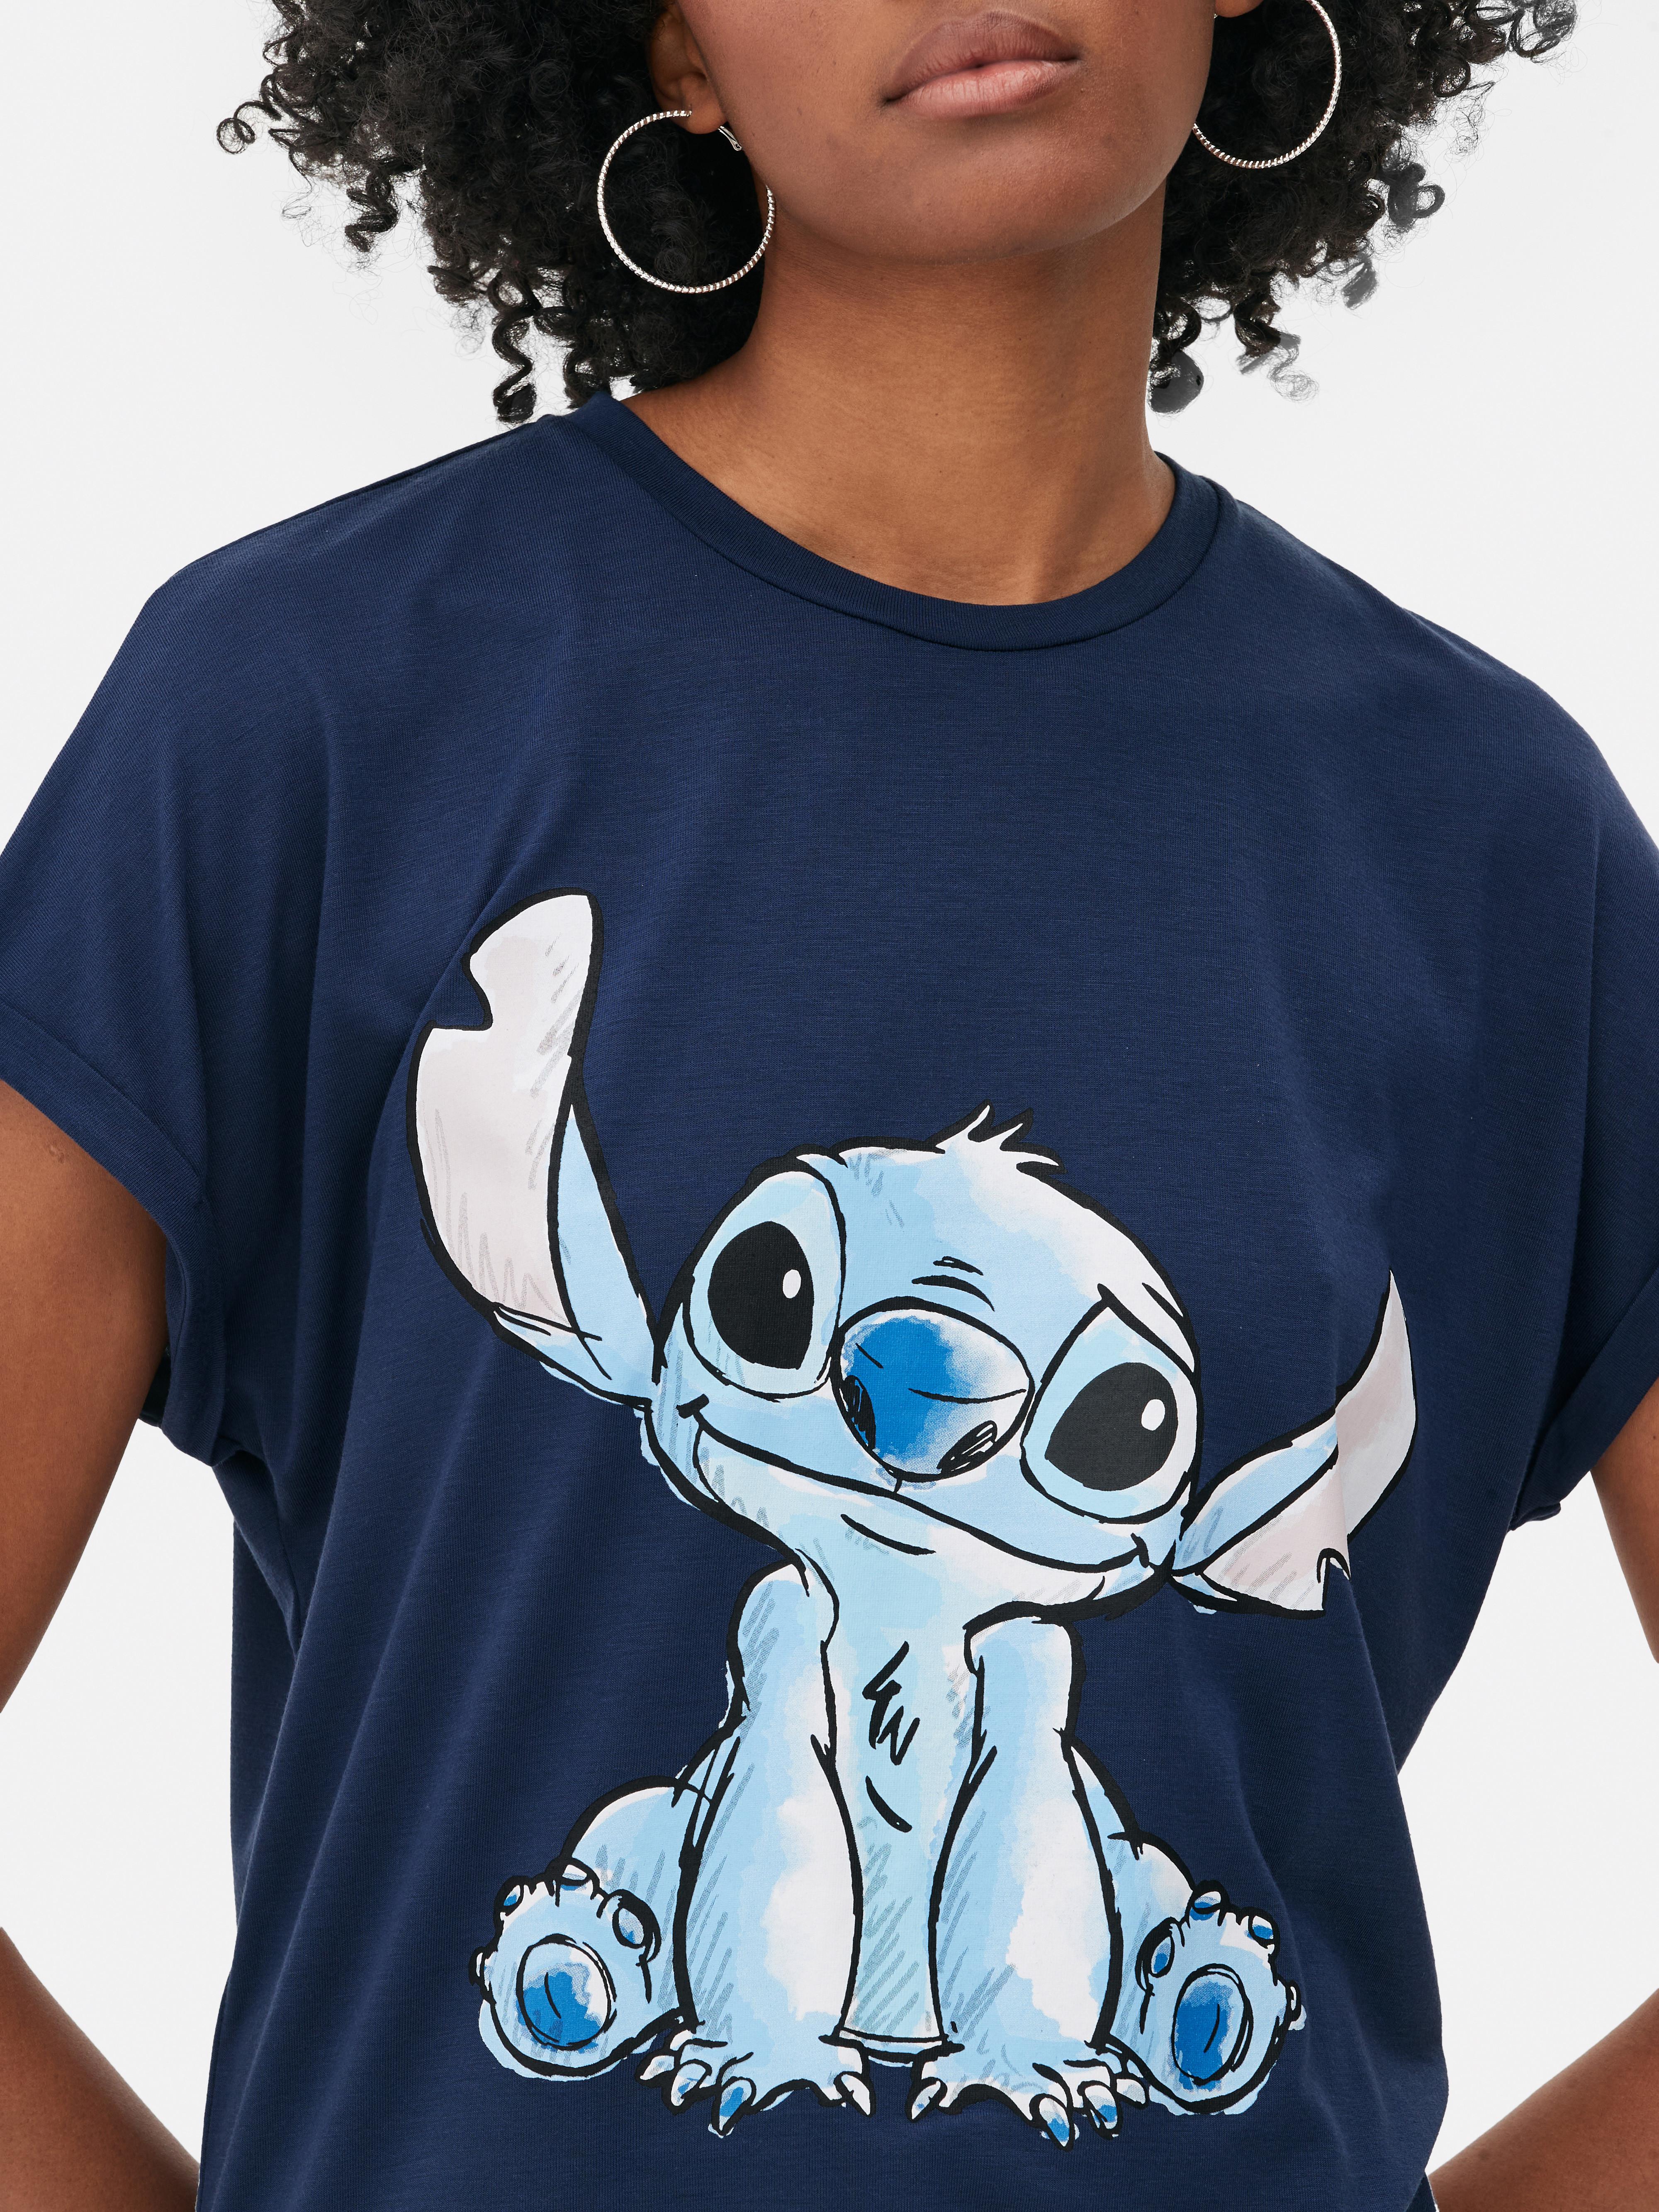 Disney's Lilo & Stitch T-shirt